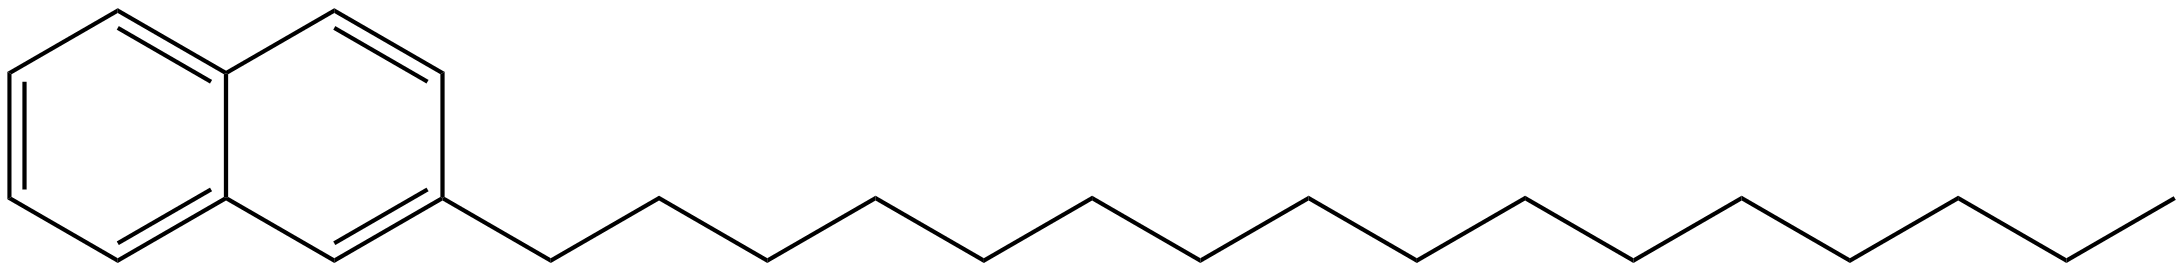 Image of 2-hexadecylnaphthalene